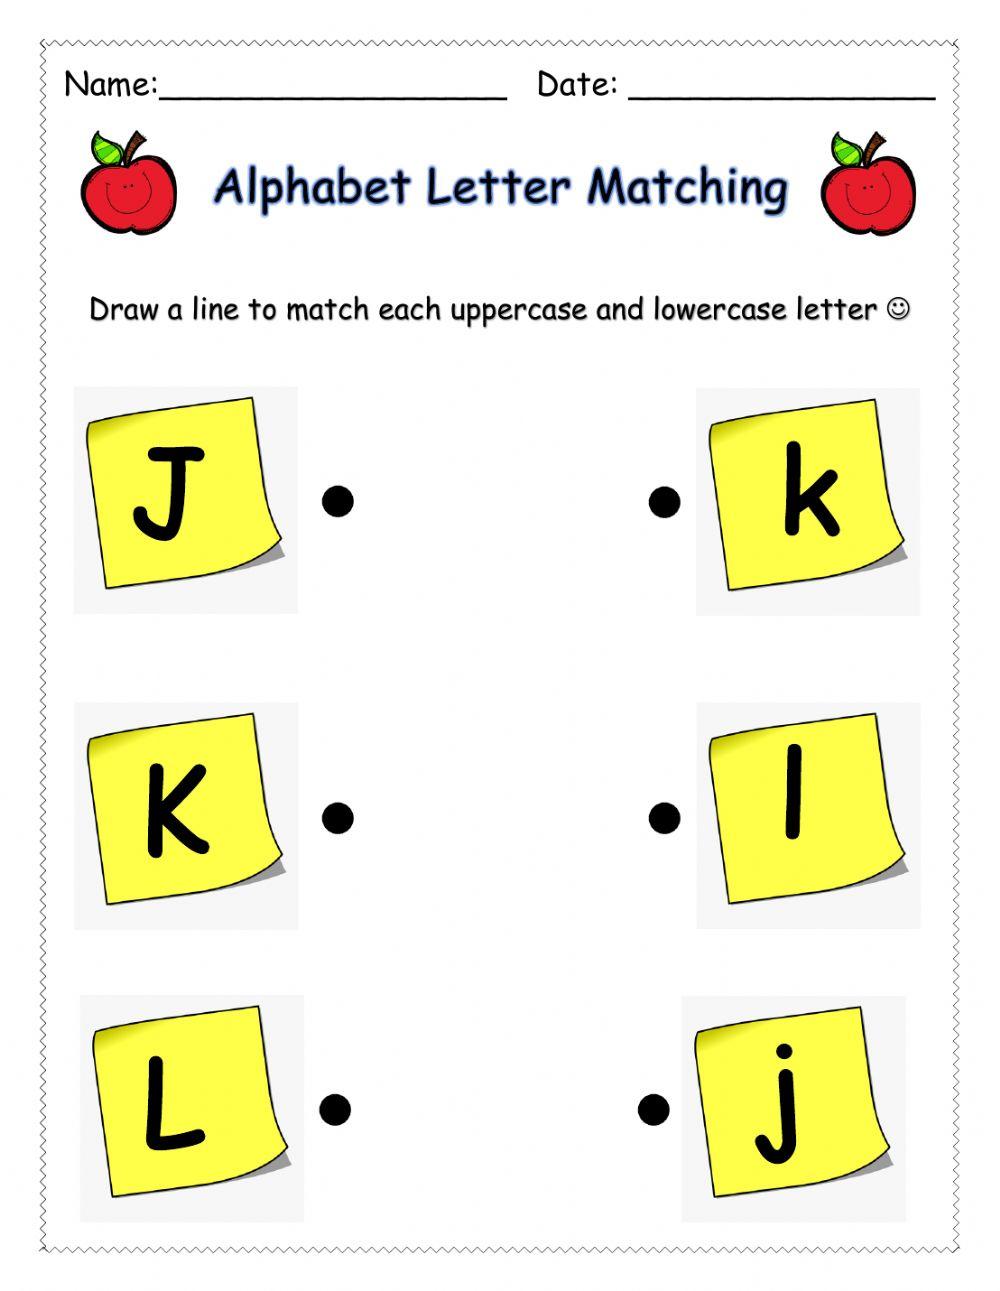 Letter Matching (JKL)